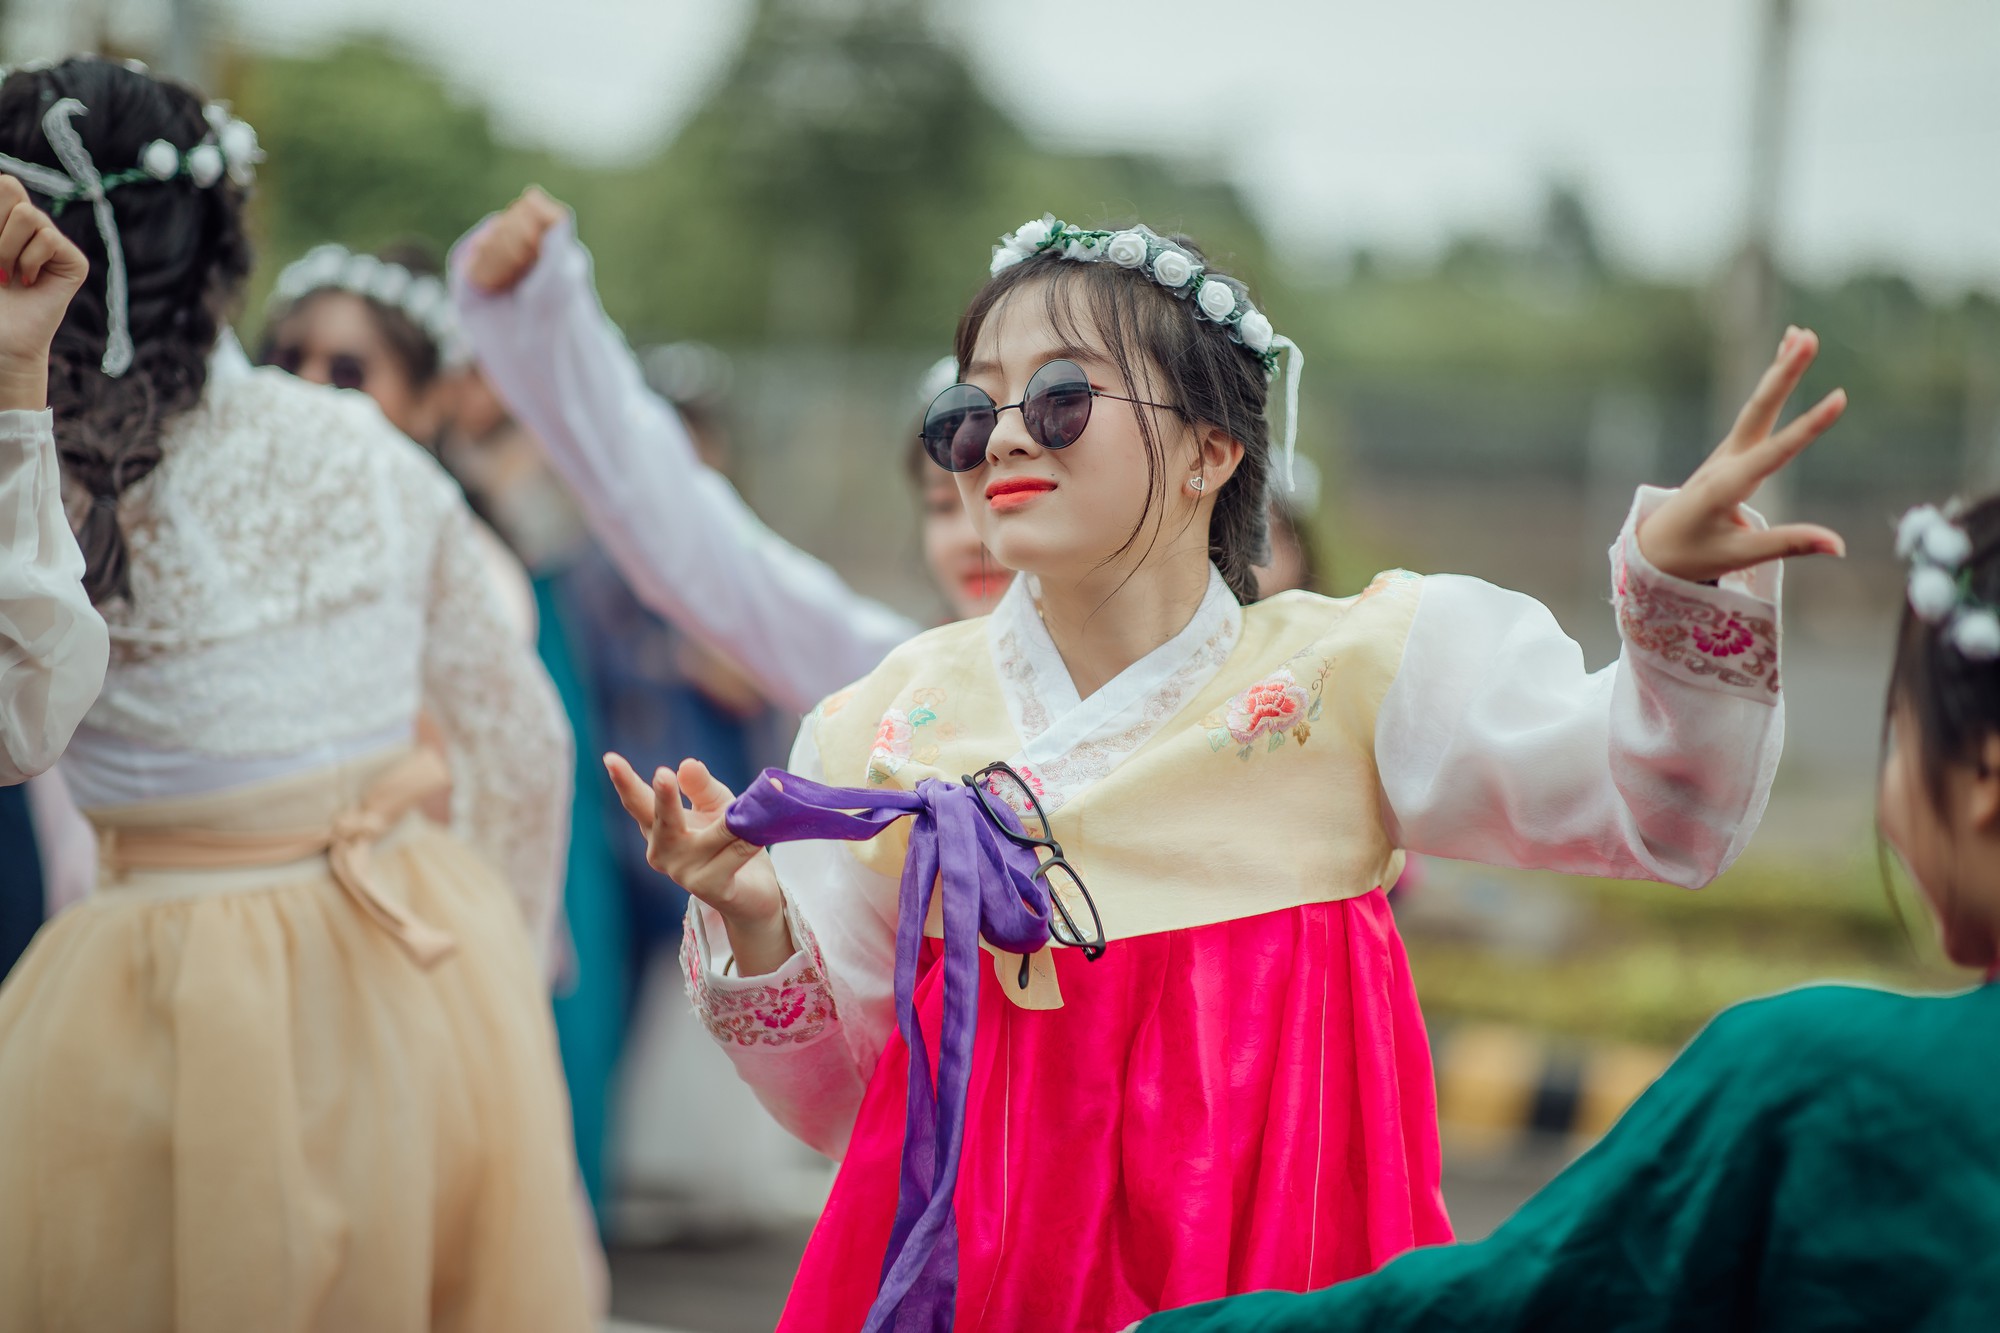 Ở đó, các cô cậu học trò tự tin trong khoác lên mình những bộ đồ truyền thống, đậm mùi "cổ trang" Hàn Quốc nhưng vẫn vô cùng hiện đại khi hóa thân vào các dancer.